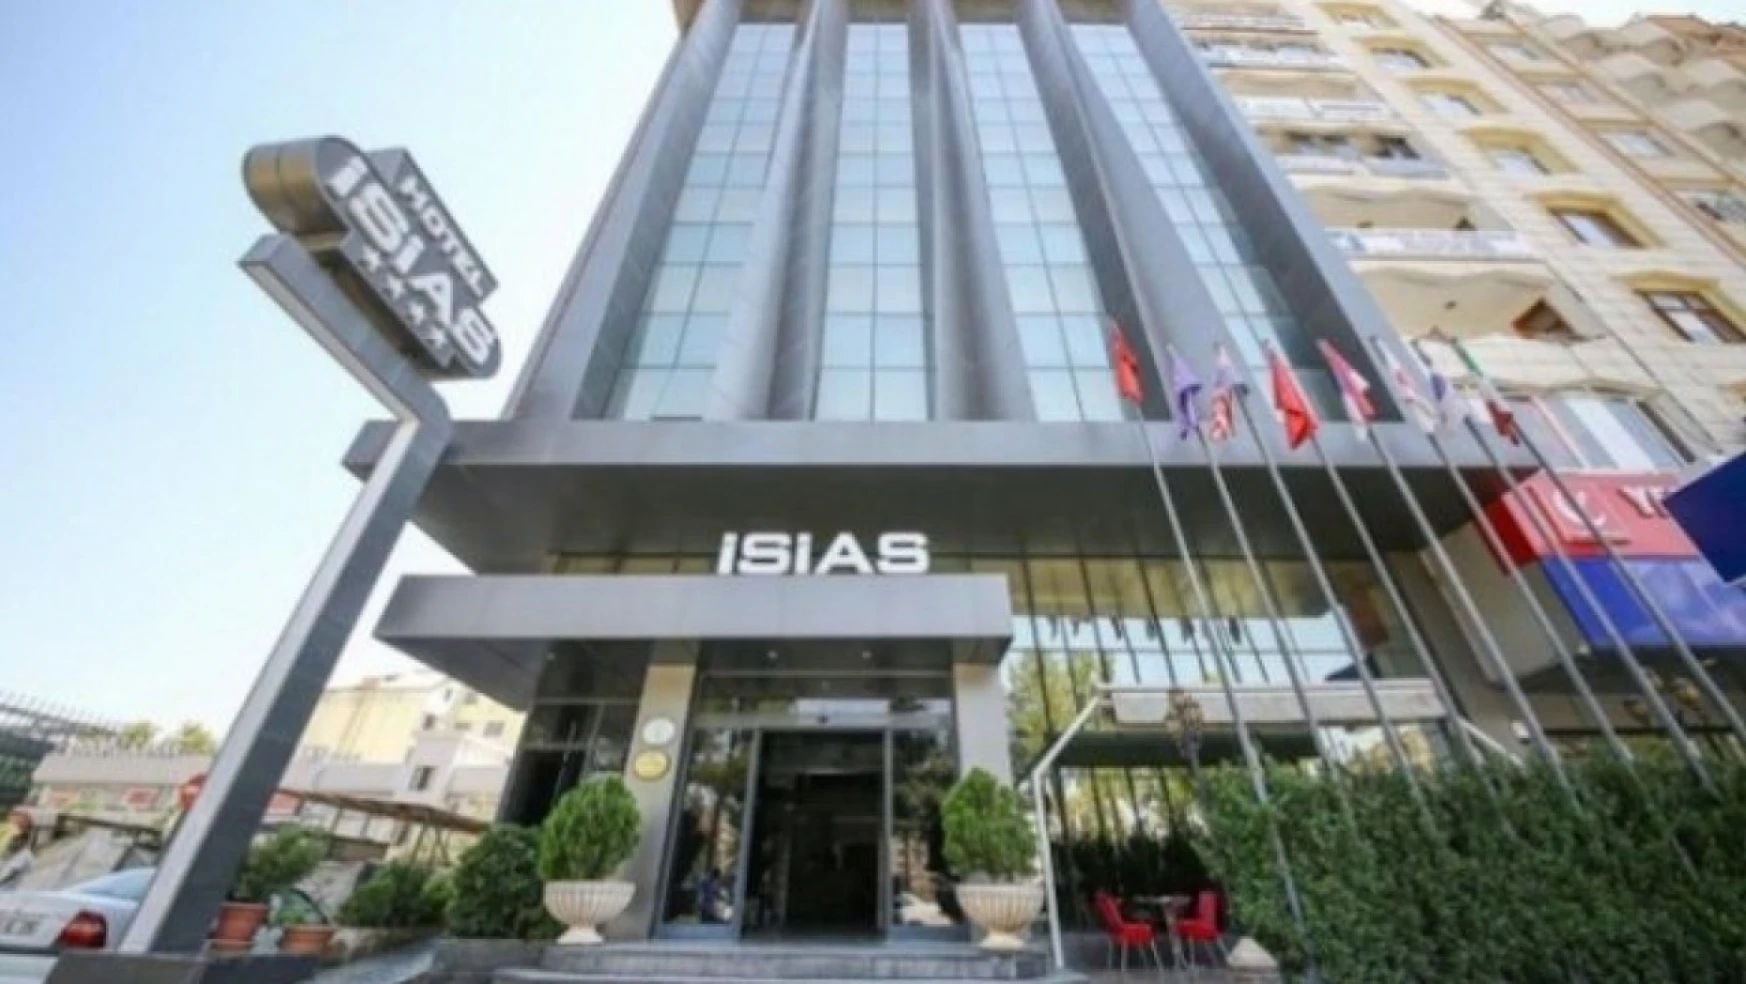 72 kişinin hayatını kaybettiği İsias Otel'le ilgili iddianame tamamlandı